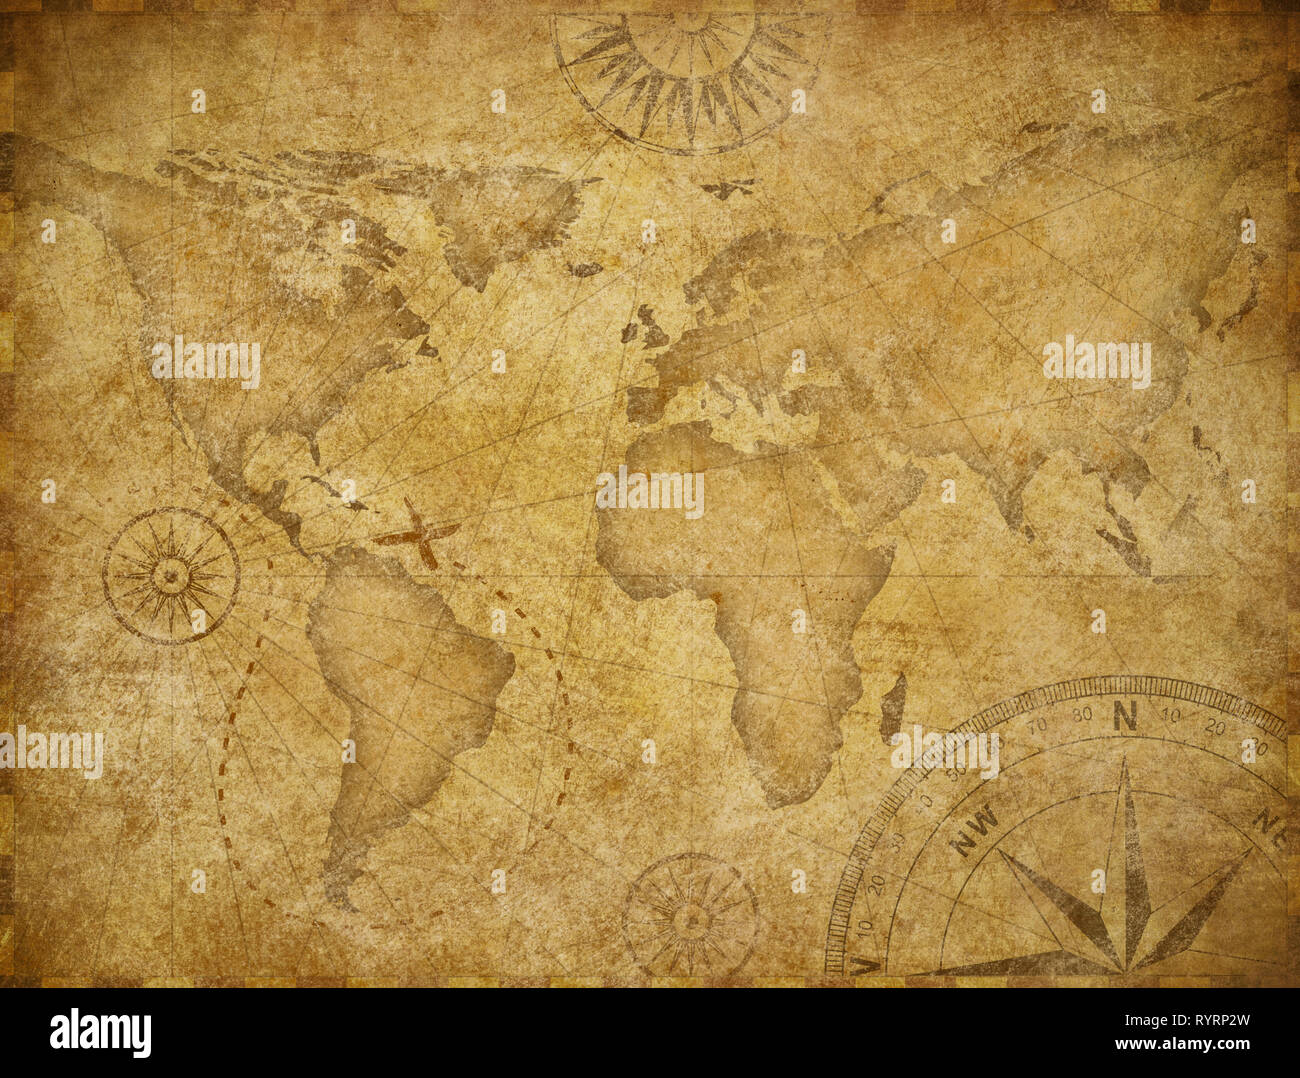 L'exploration du vieux monde carte basée sur l'image fournie par la NASA Banque D'Images